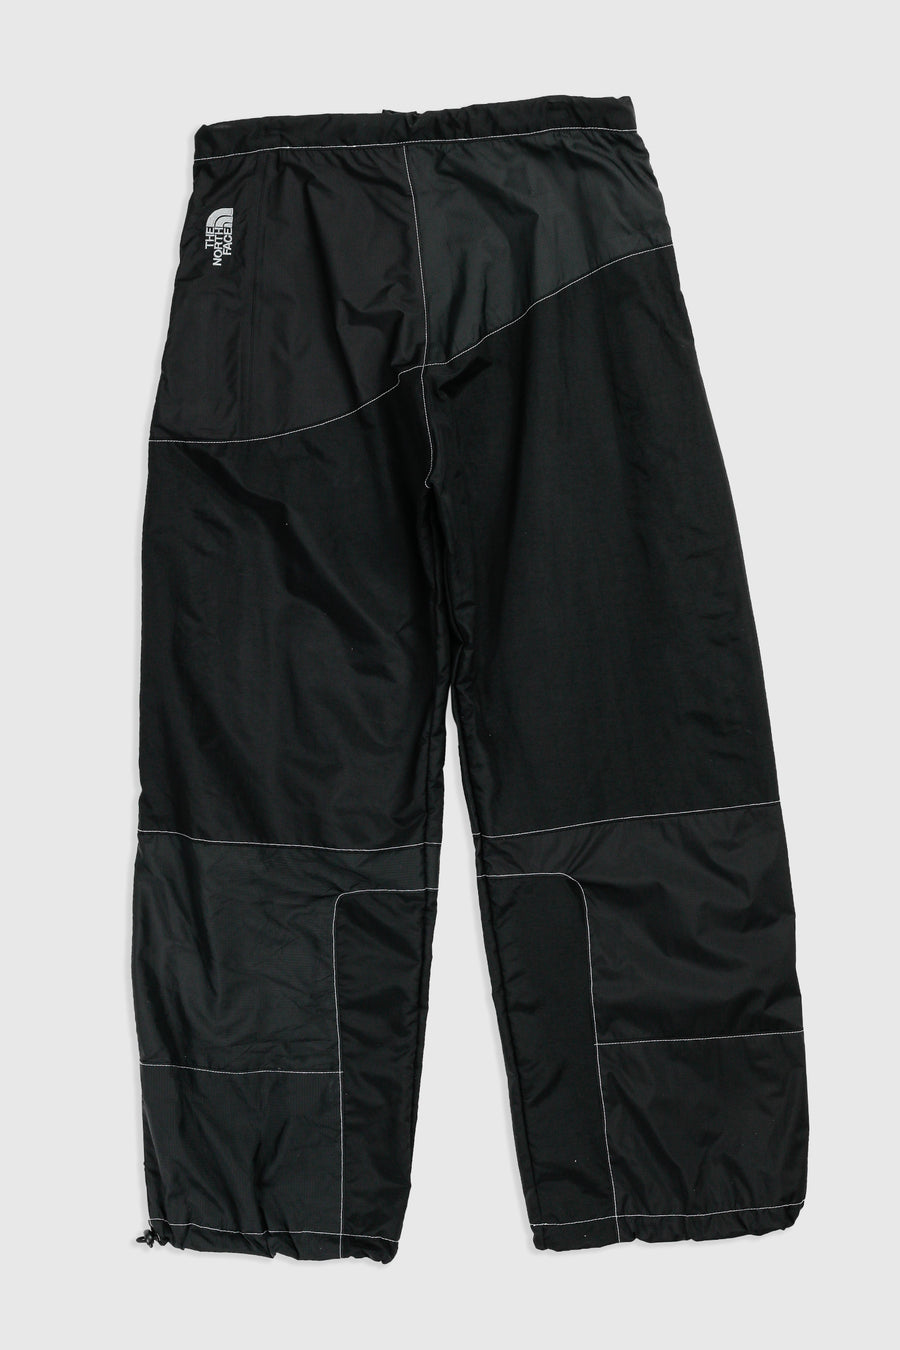 Rework Outerwear Pant - L